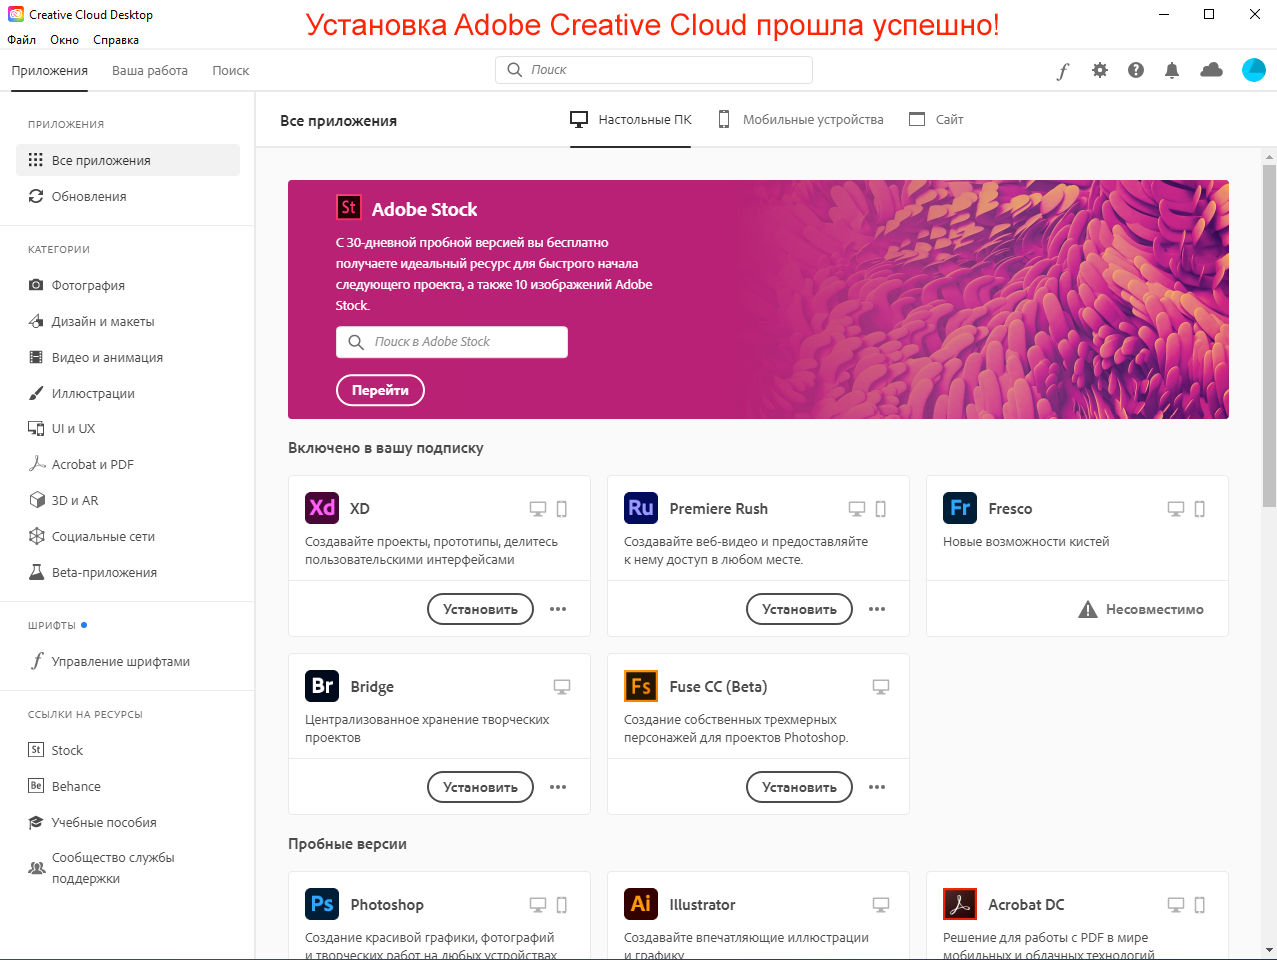 Успешная установка Adobe Creative Cloud